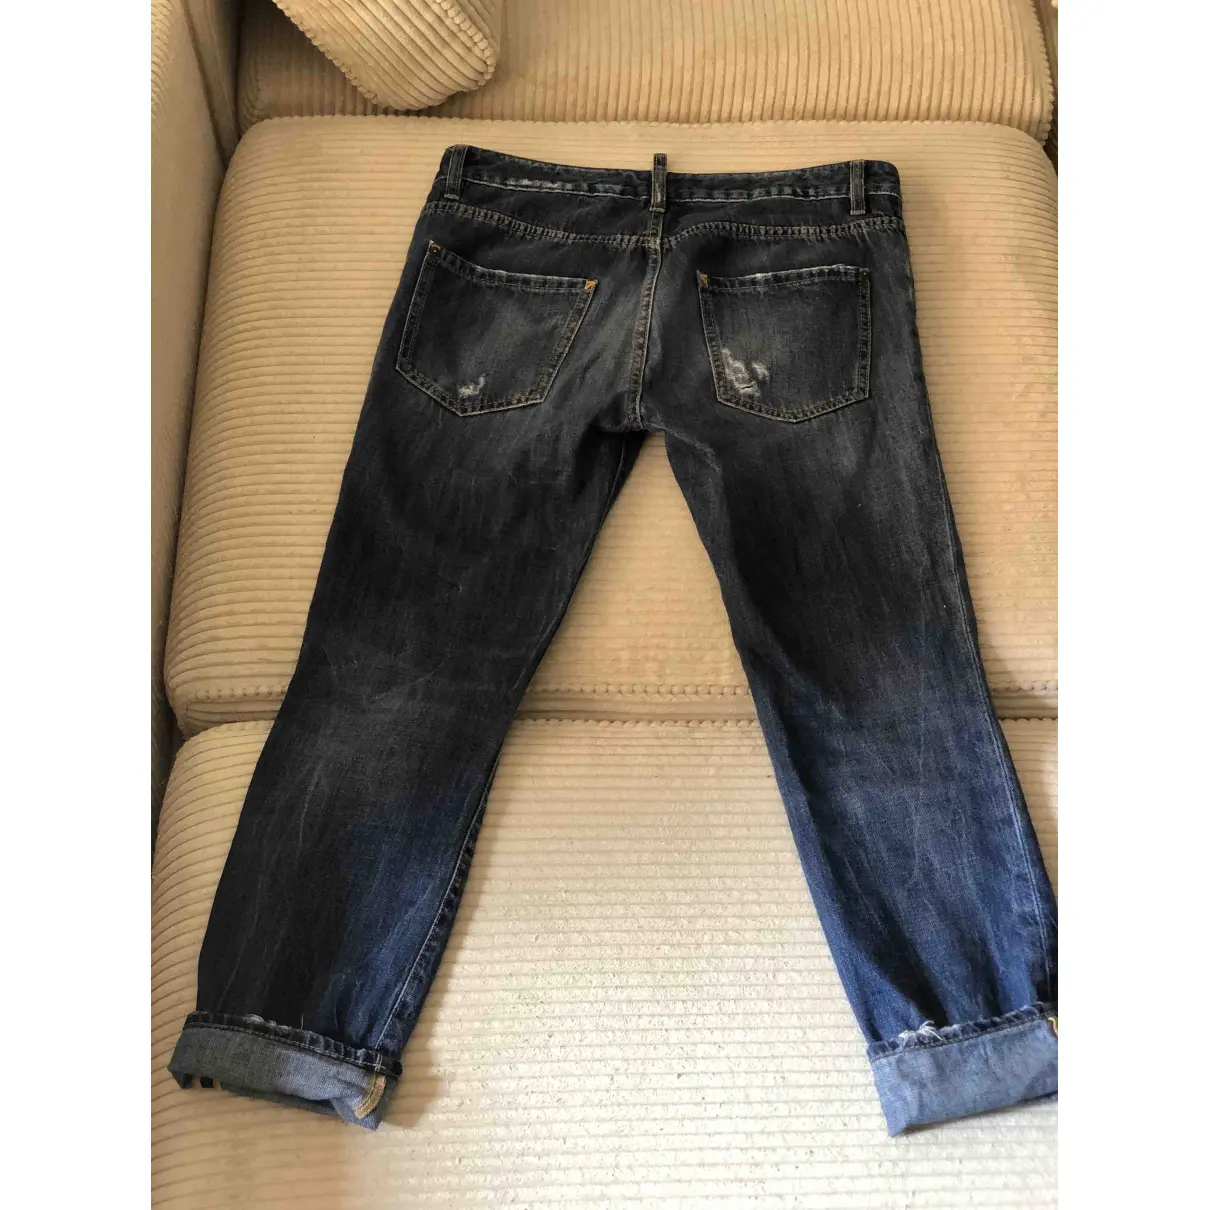 Buy Dsquared2 Boyfriend jeans online